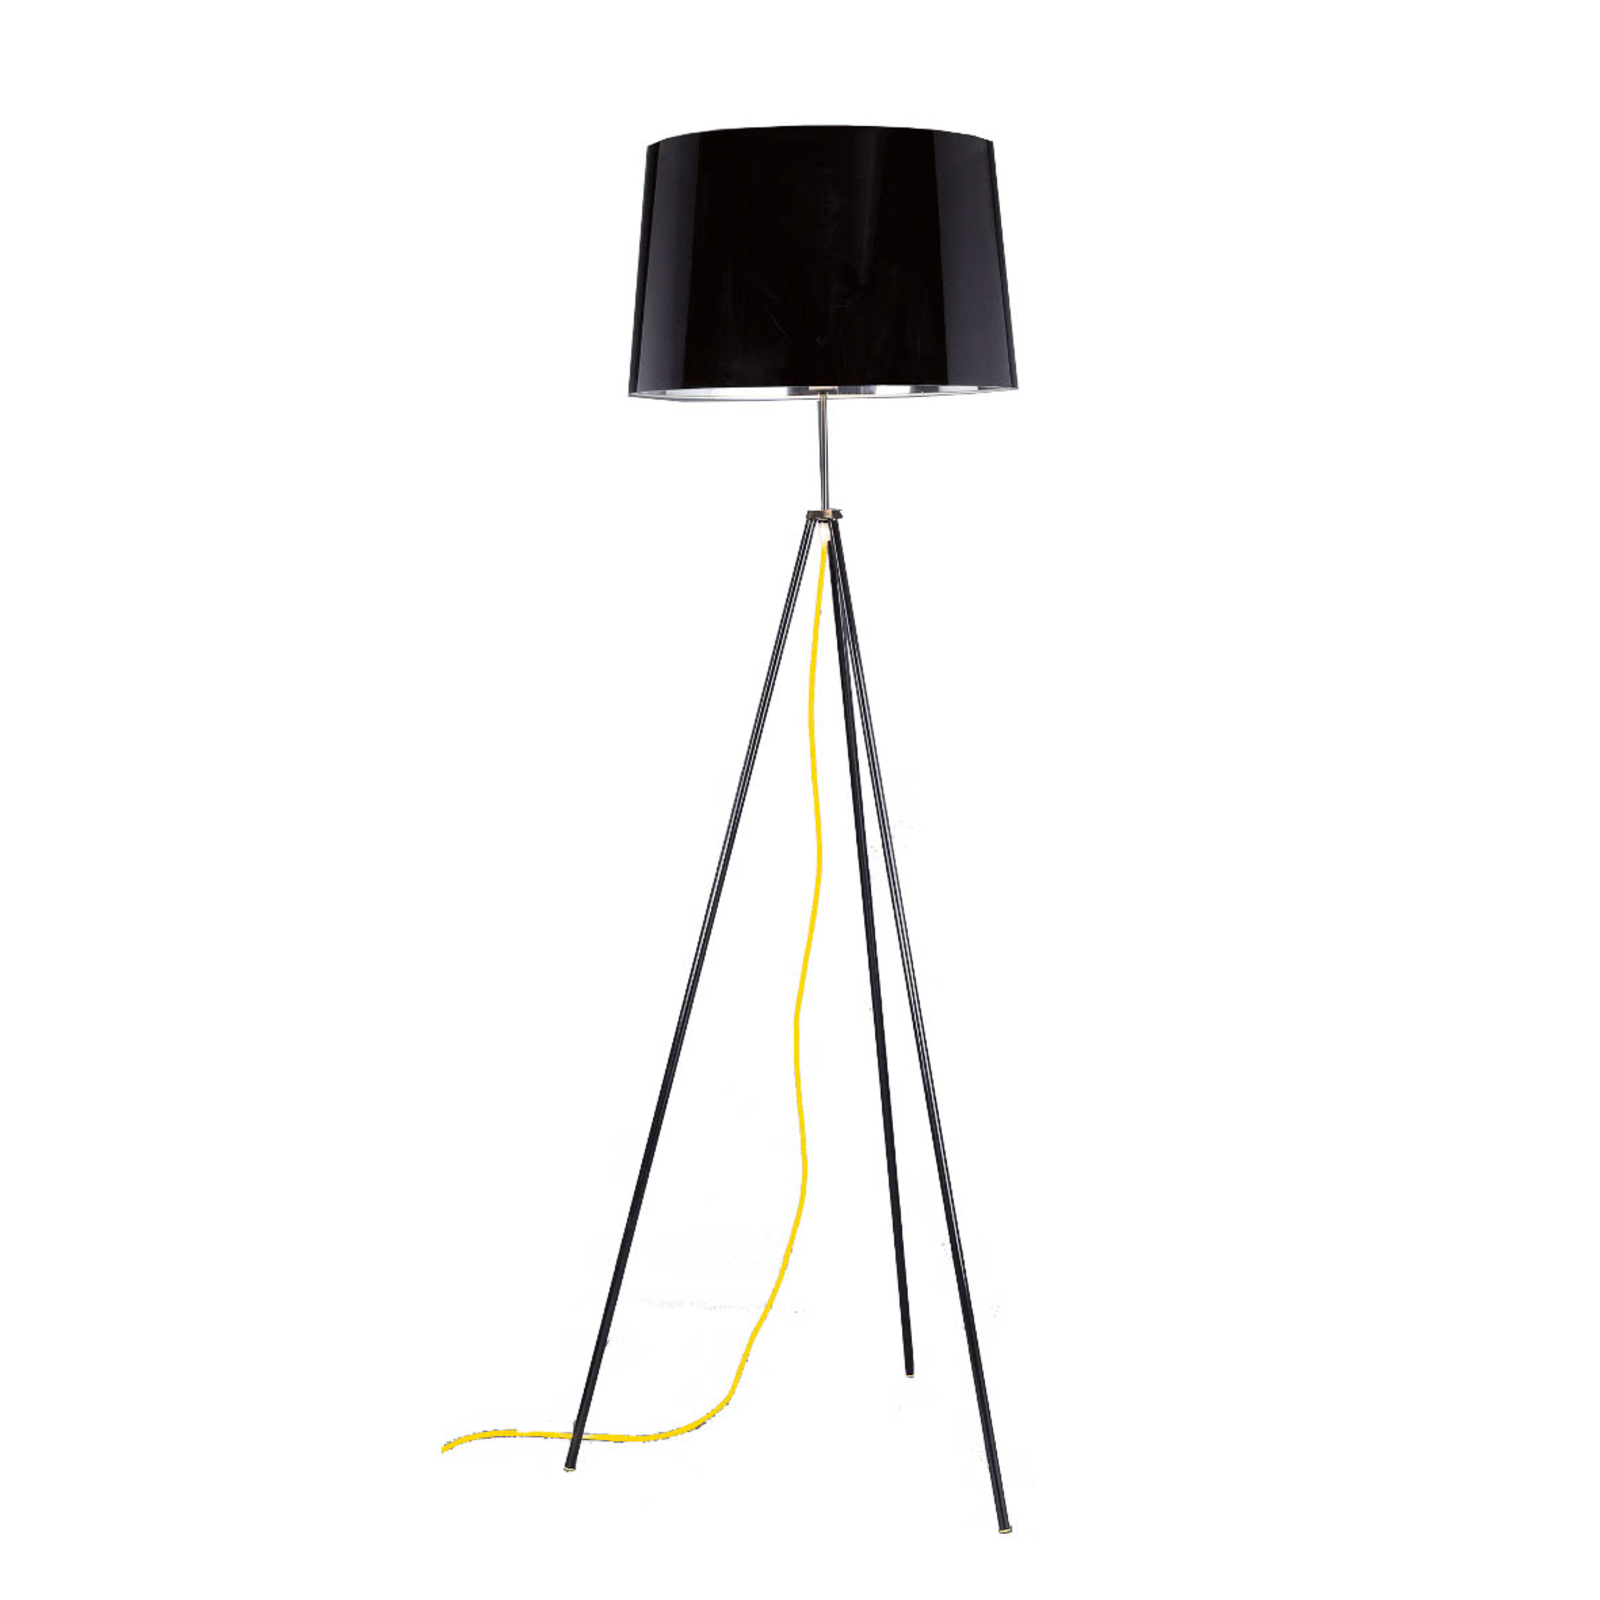 Aluminor Tropic stojací lampa černá, kabel žlutý